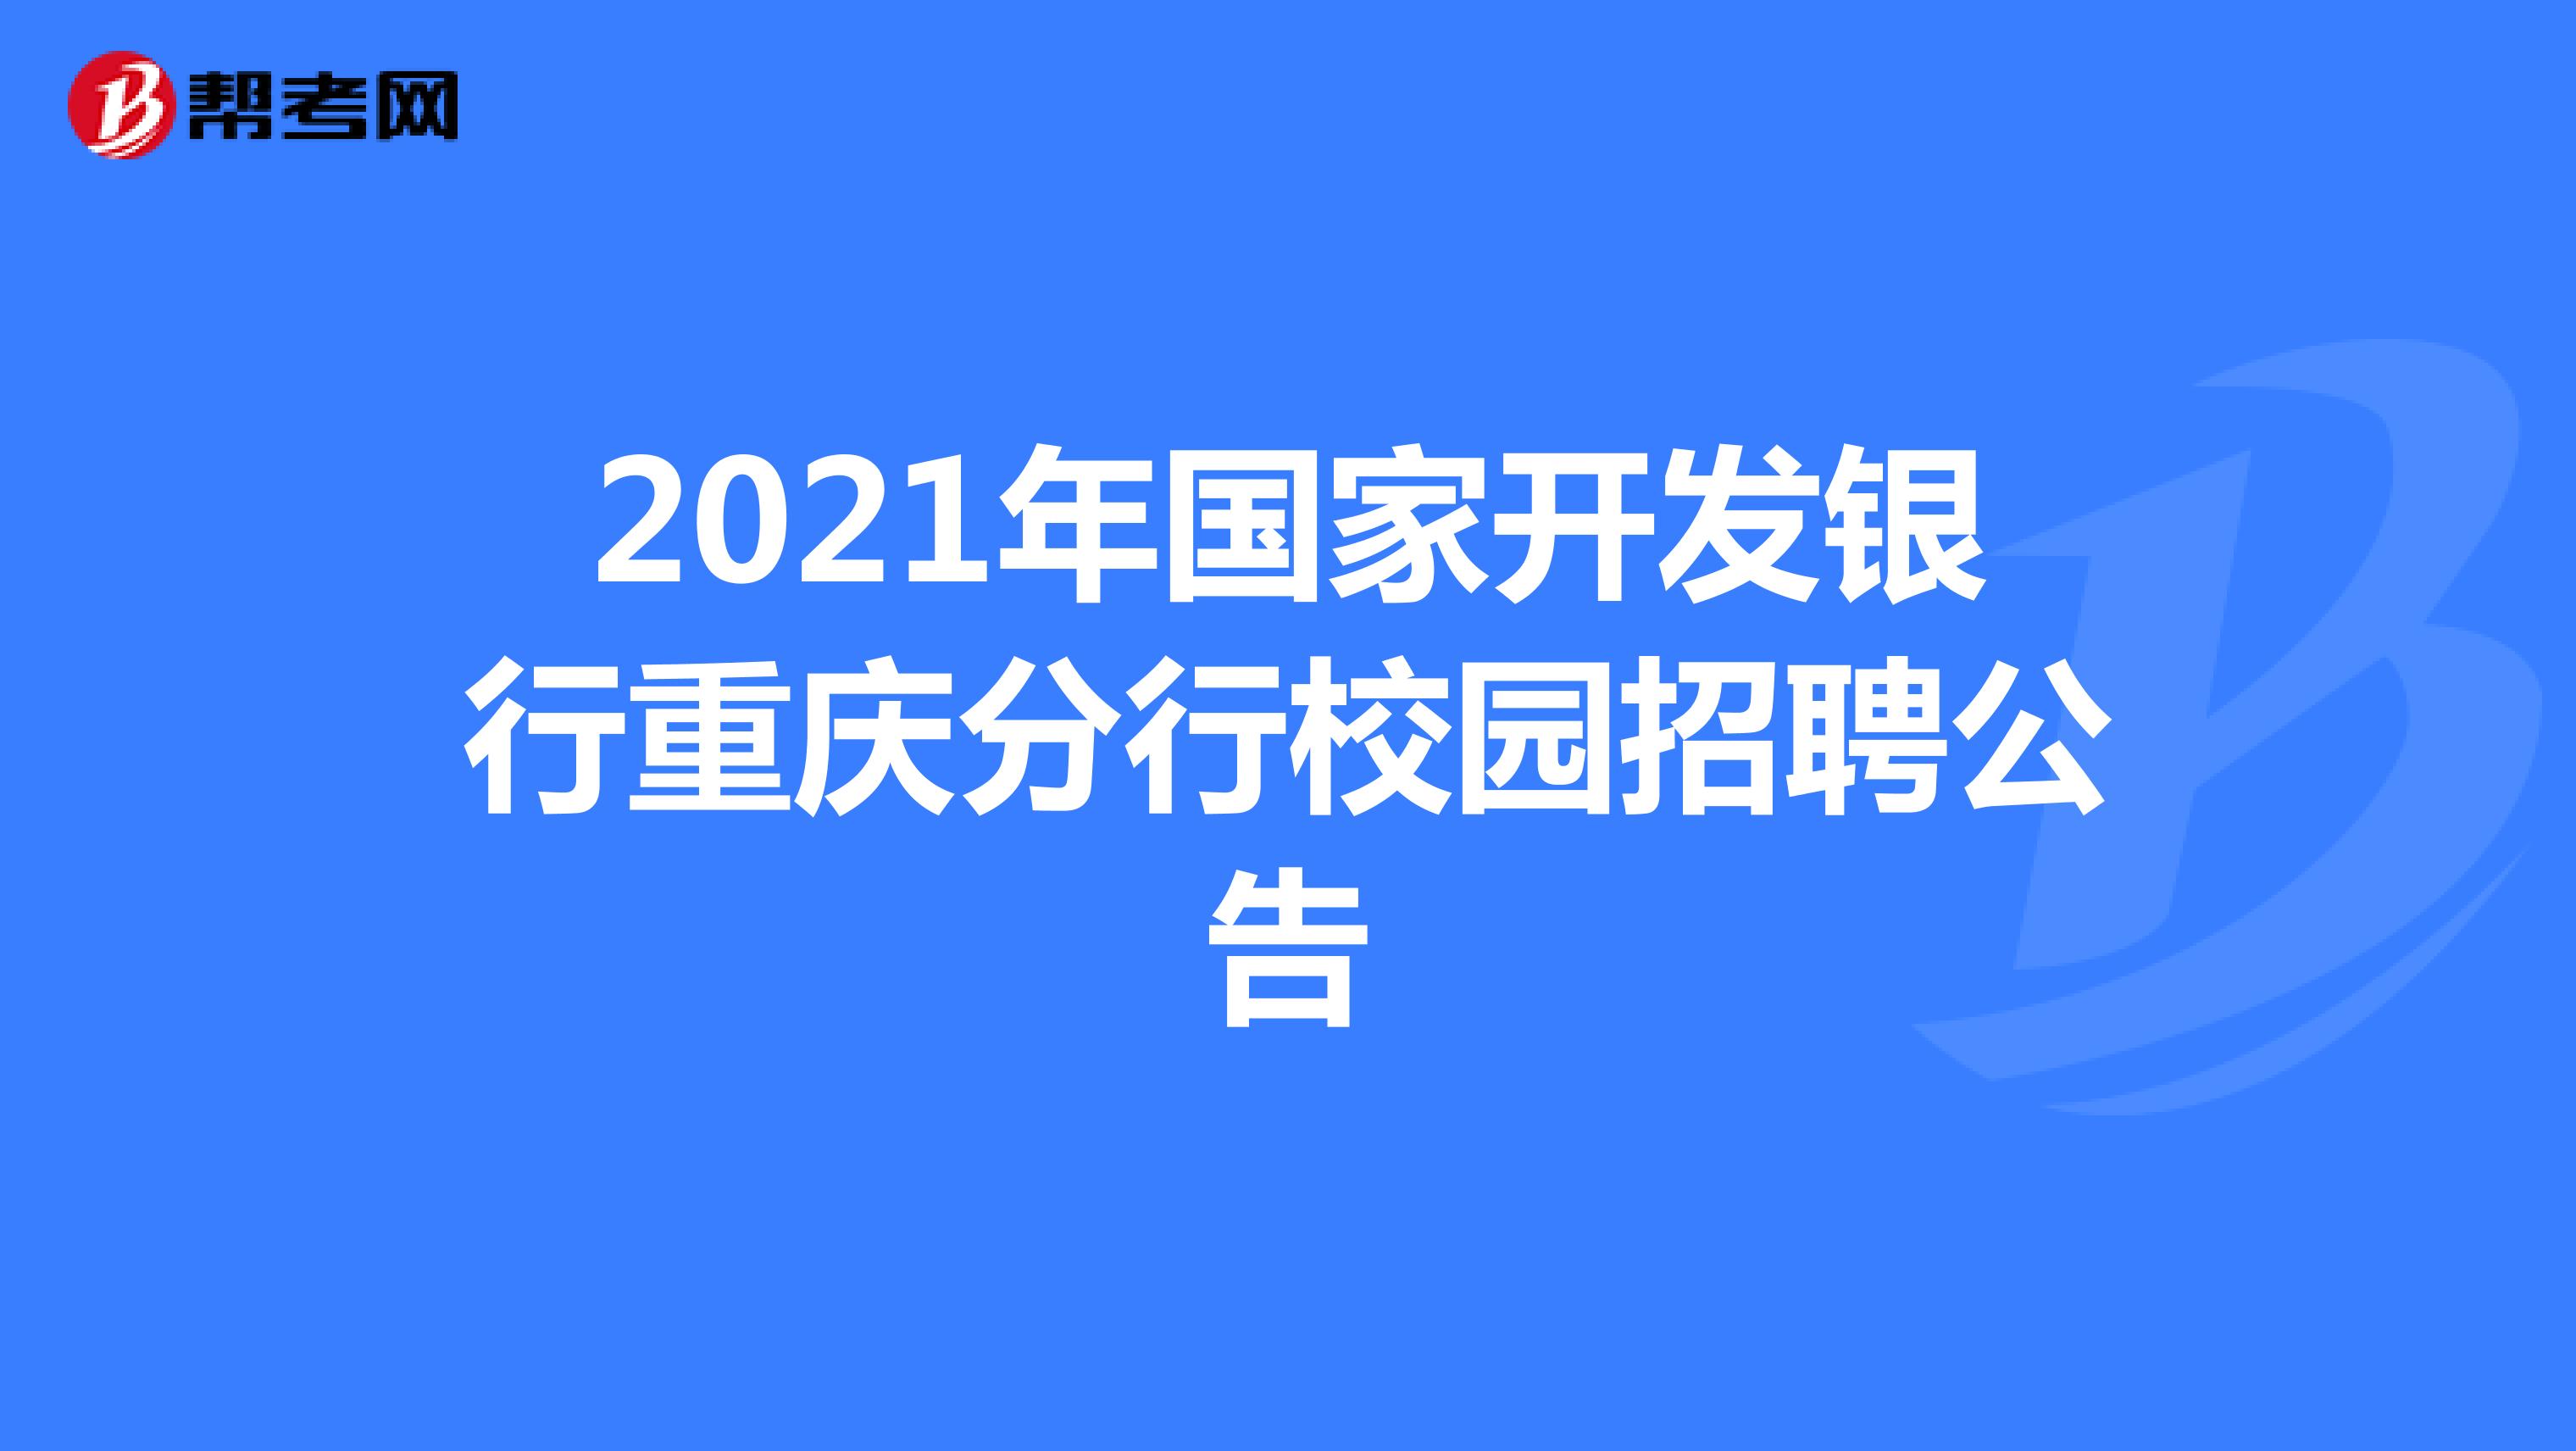 2021年国家开发银行重庆分行校园招聘公告